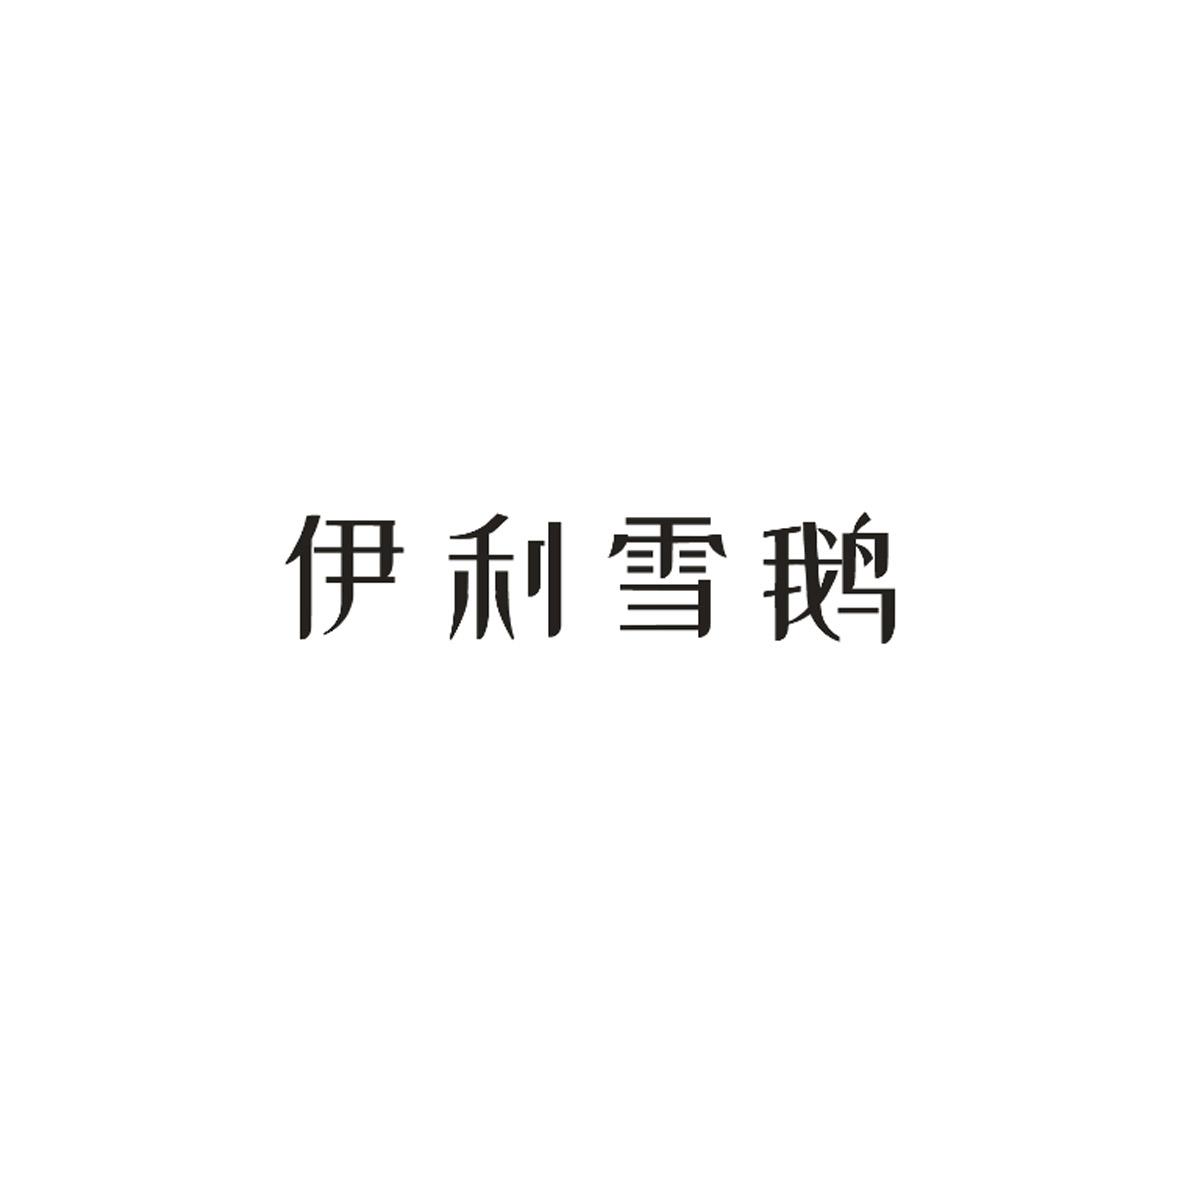 伊利雪鹅logo